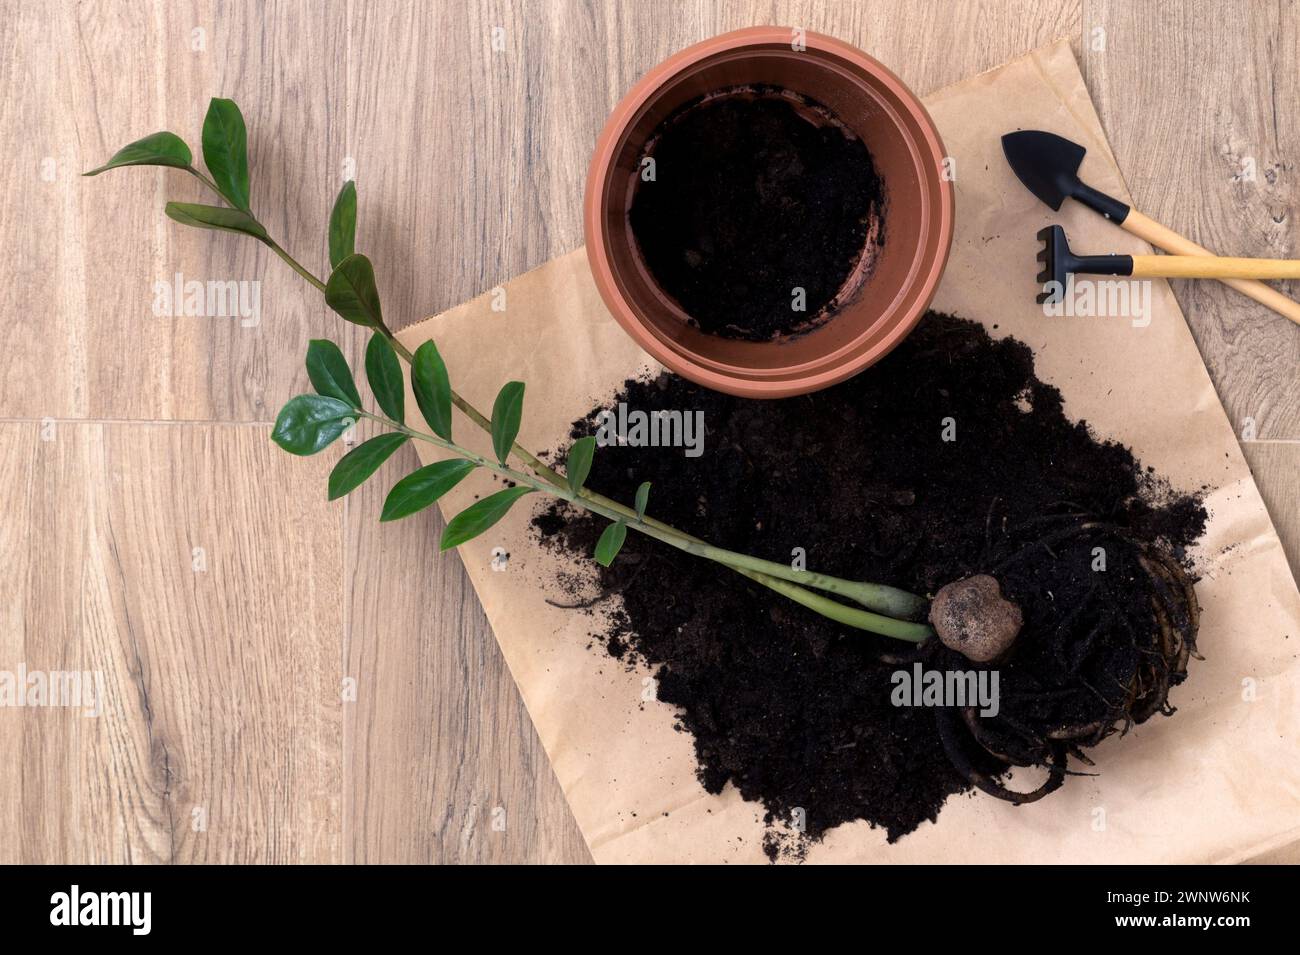 Repotare la pianta domestica Zamioculcas con l'aiuto di mini utensili da giardino nero per piantare fiori. Hobby, la routine autunnale di primavera. Giardinaggio domestico, coltivazione Foto Stock